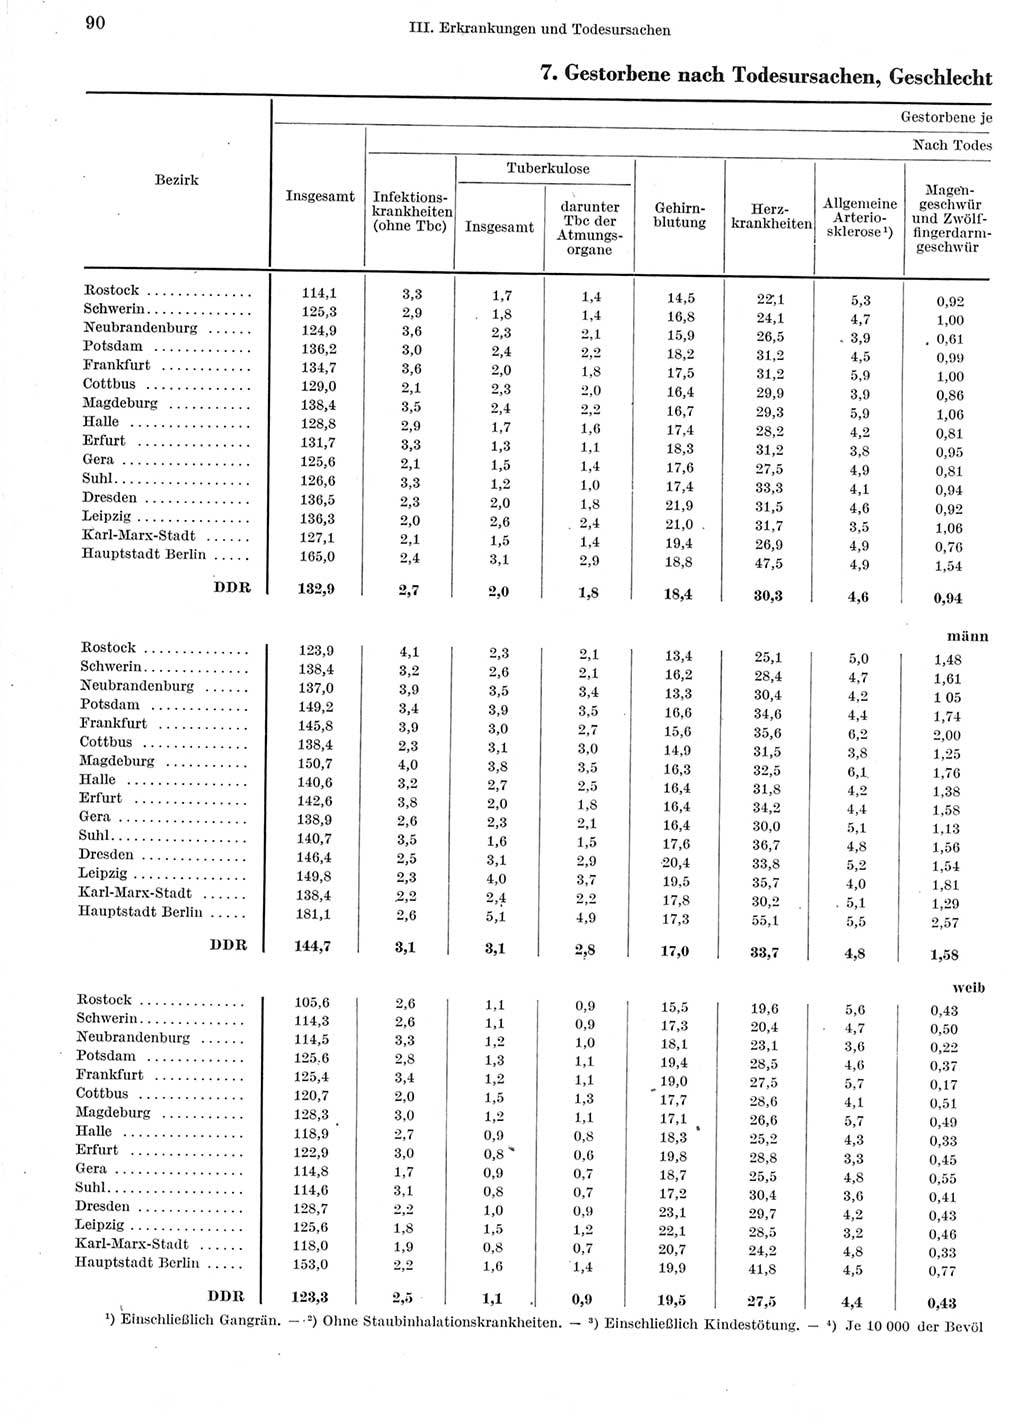 Statistisches Jahrbuch der Deutschen Demokratischen Republik (DDR) 1960-1961, Seite 90 (Stat. Jb. DDR 1960-1961, S. 90)